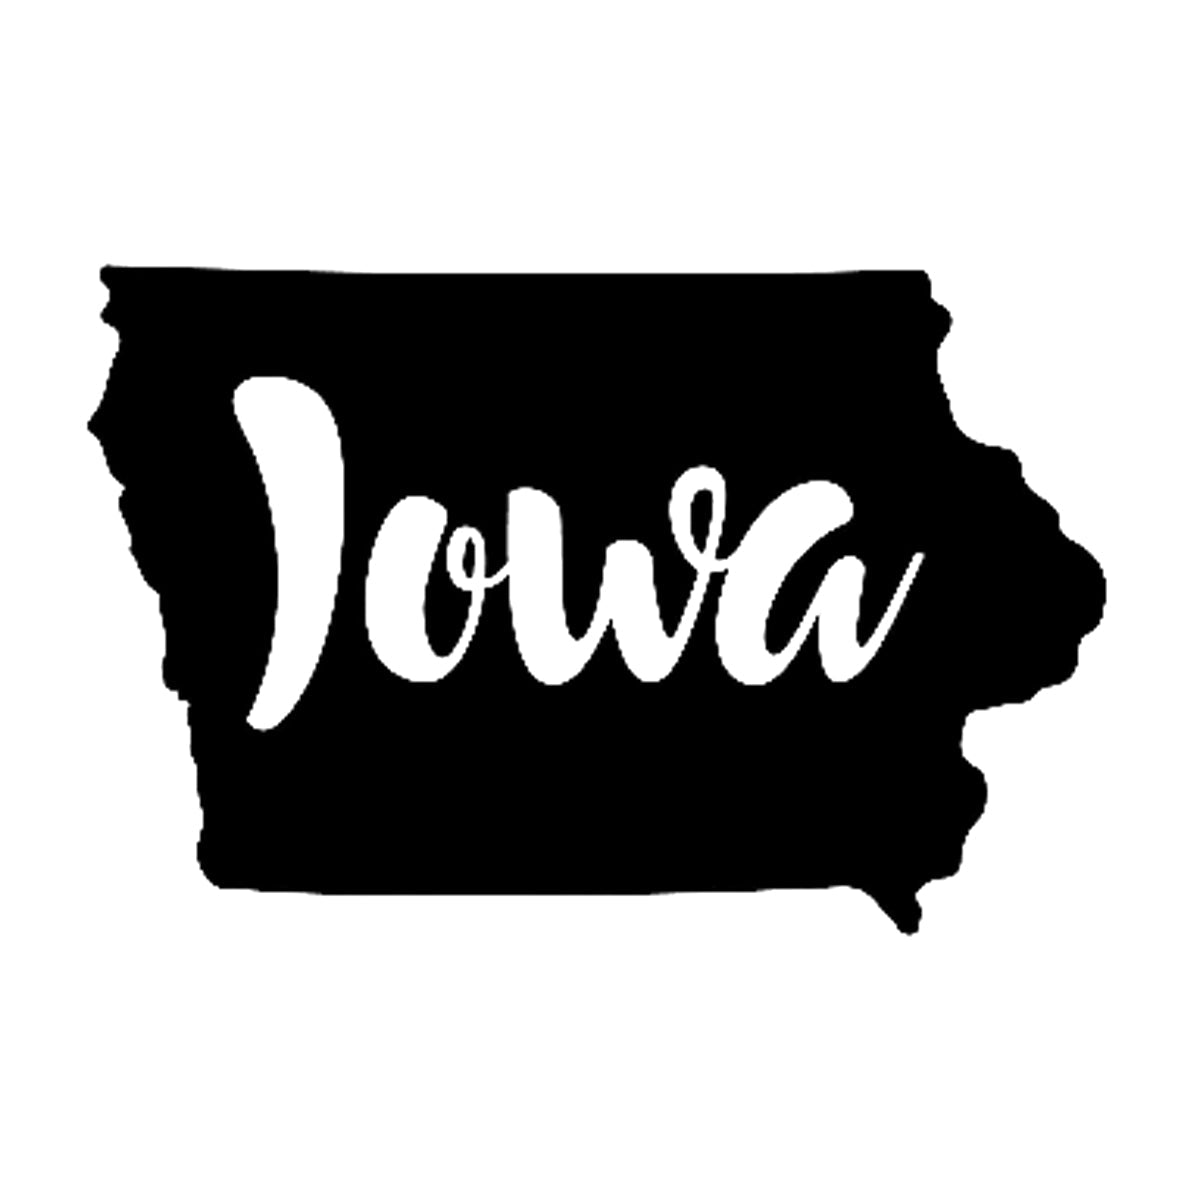 Iowa State Outline Printed Tee Humorous Shirt 411 